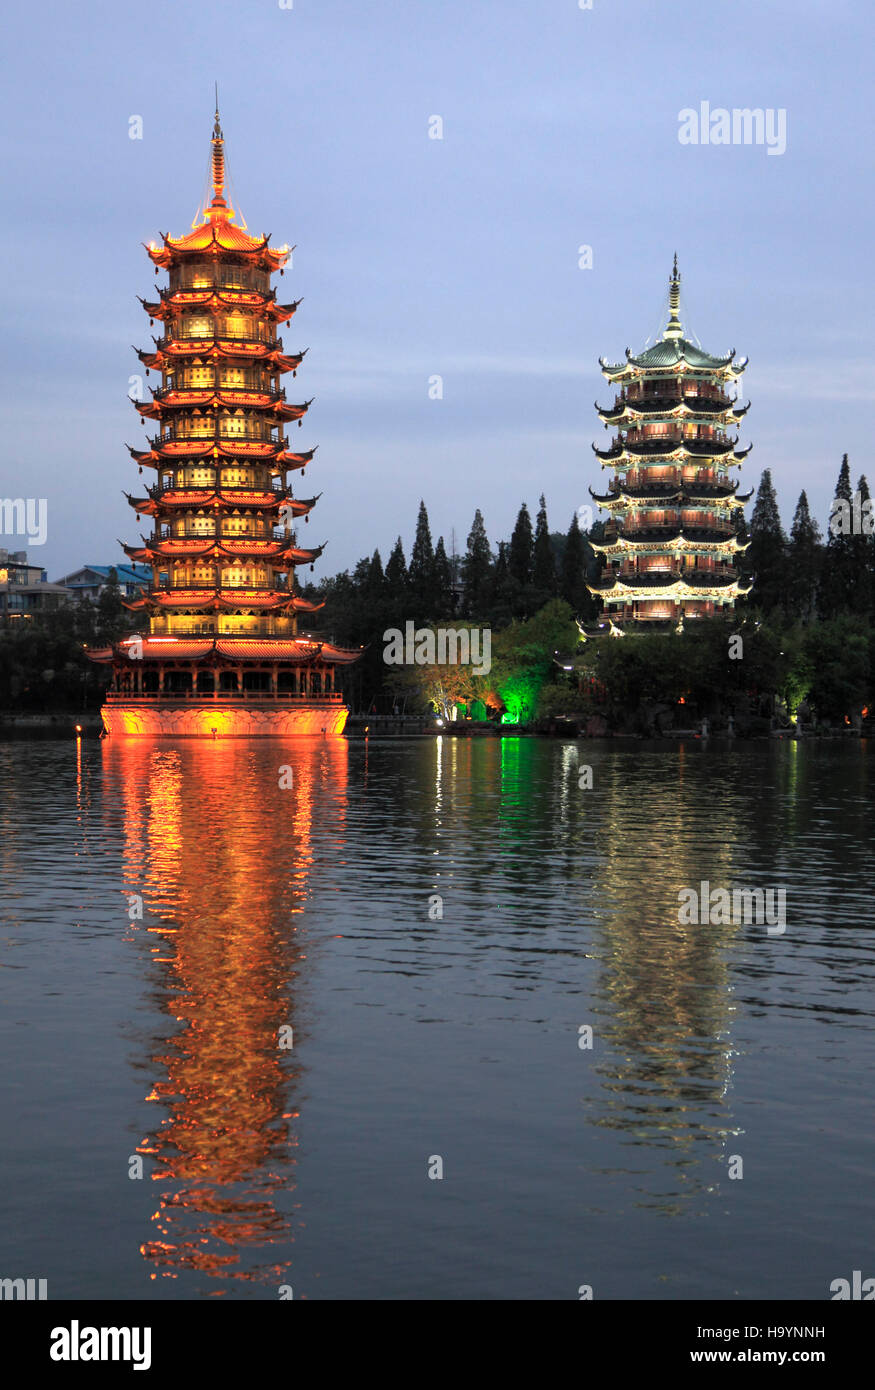 China, Guangxi, Guilin, Sun & Moon, Twin Pagodas, Shan Lake, Stock Photo